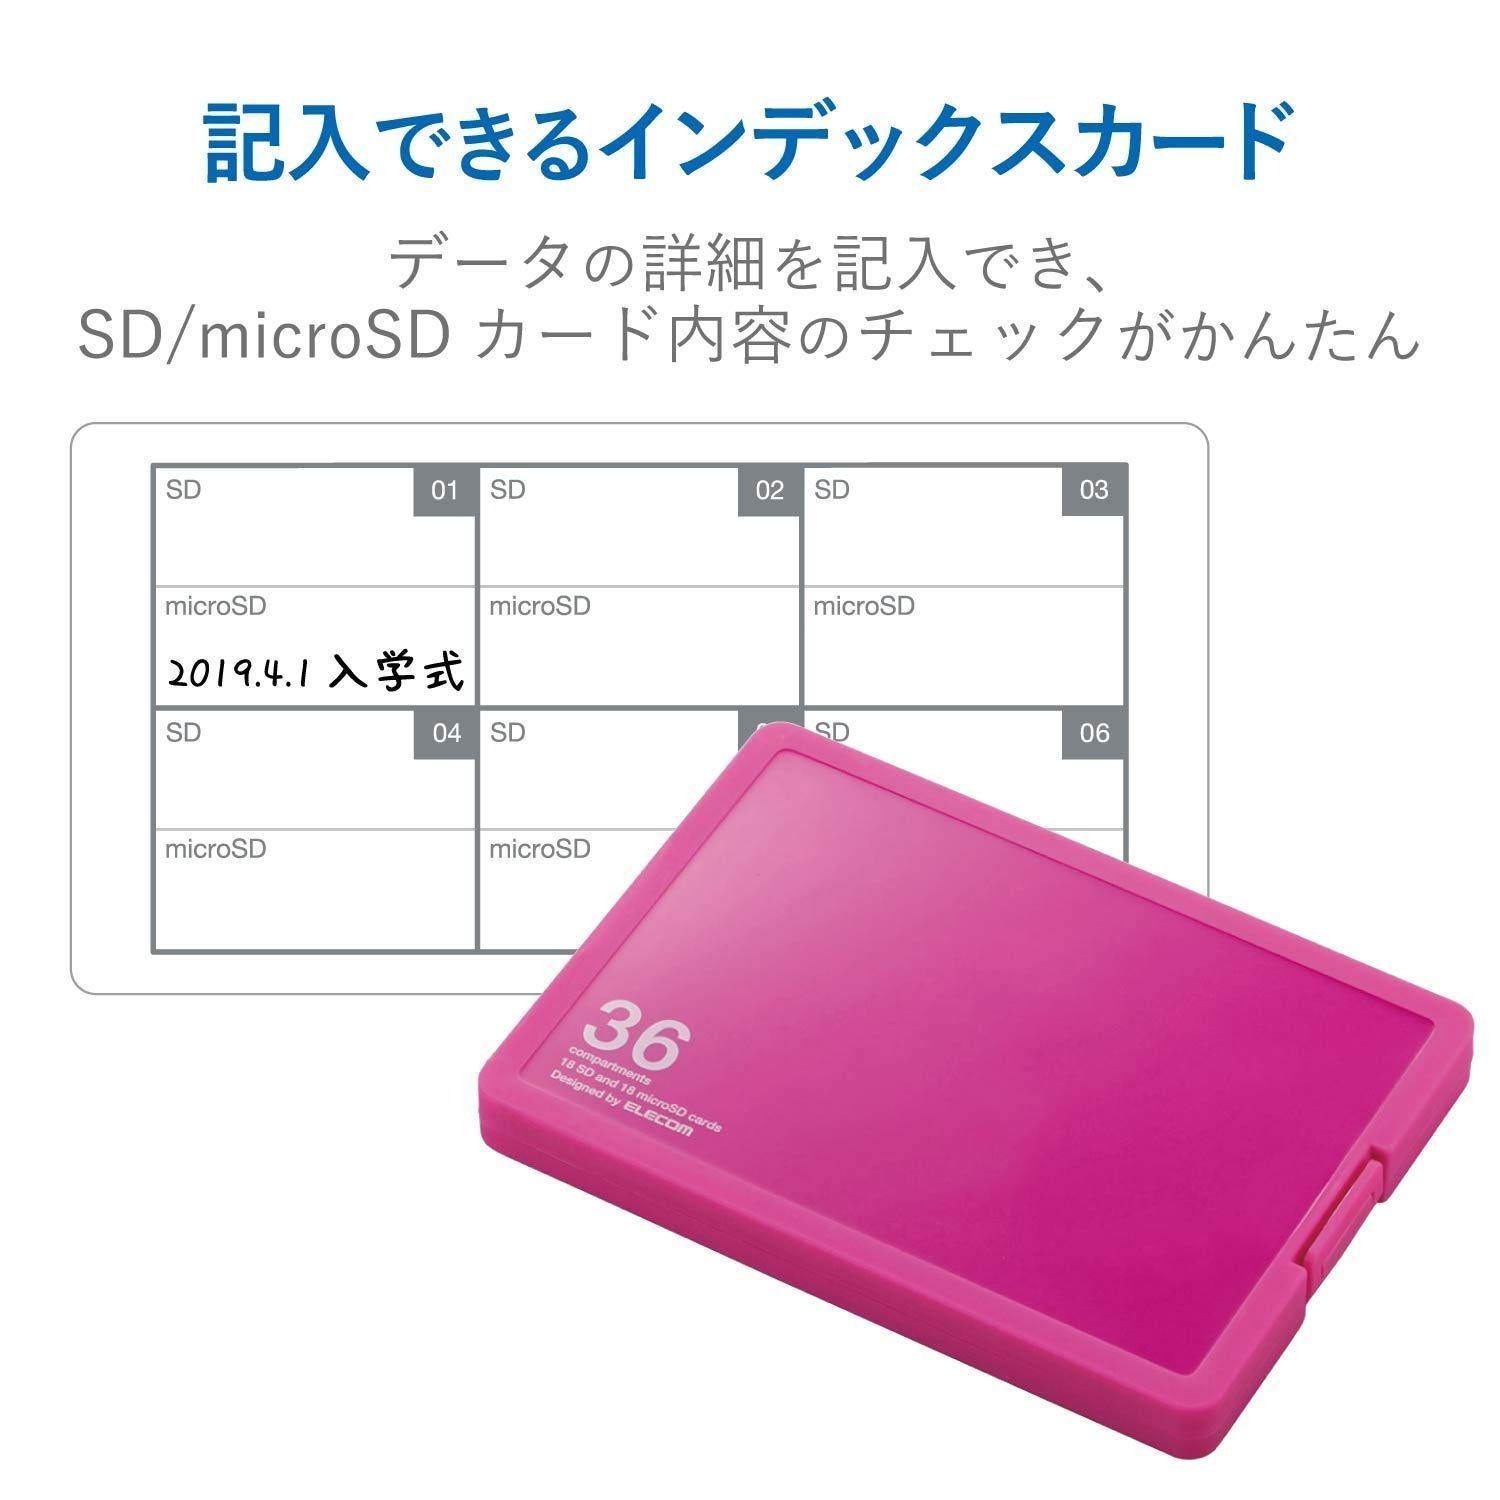 プラスチック SD18枚 ケース + SD microSD18枚収納 メモリカードケース ピンク エレコム CMC-SDCPP36PN - メルカリ